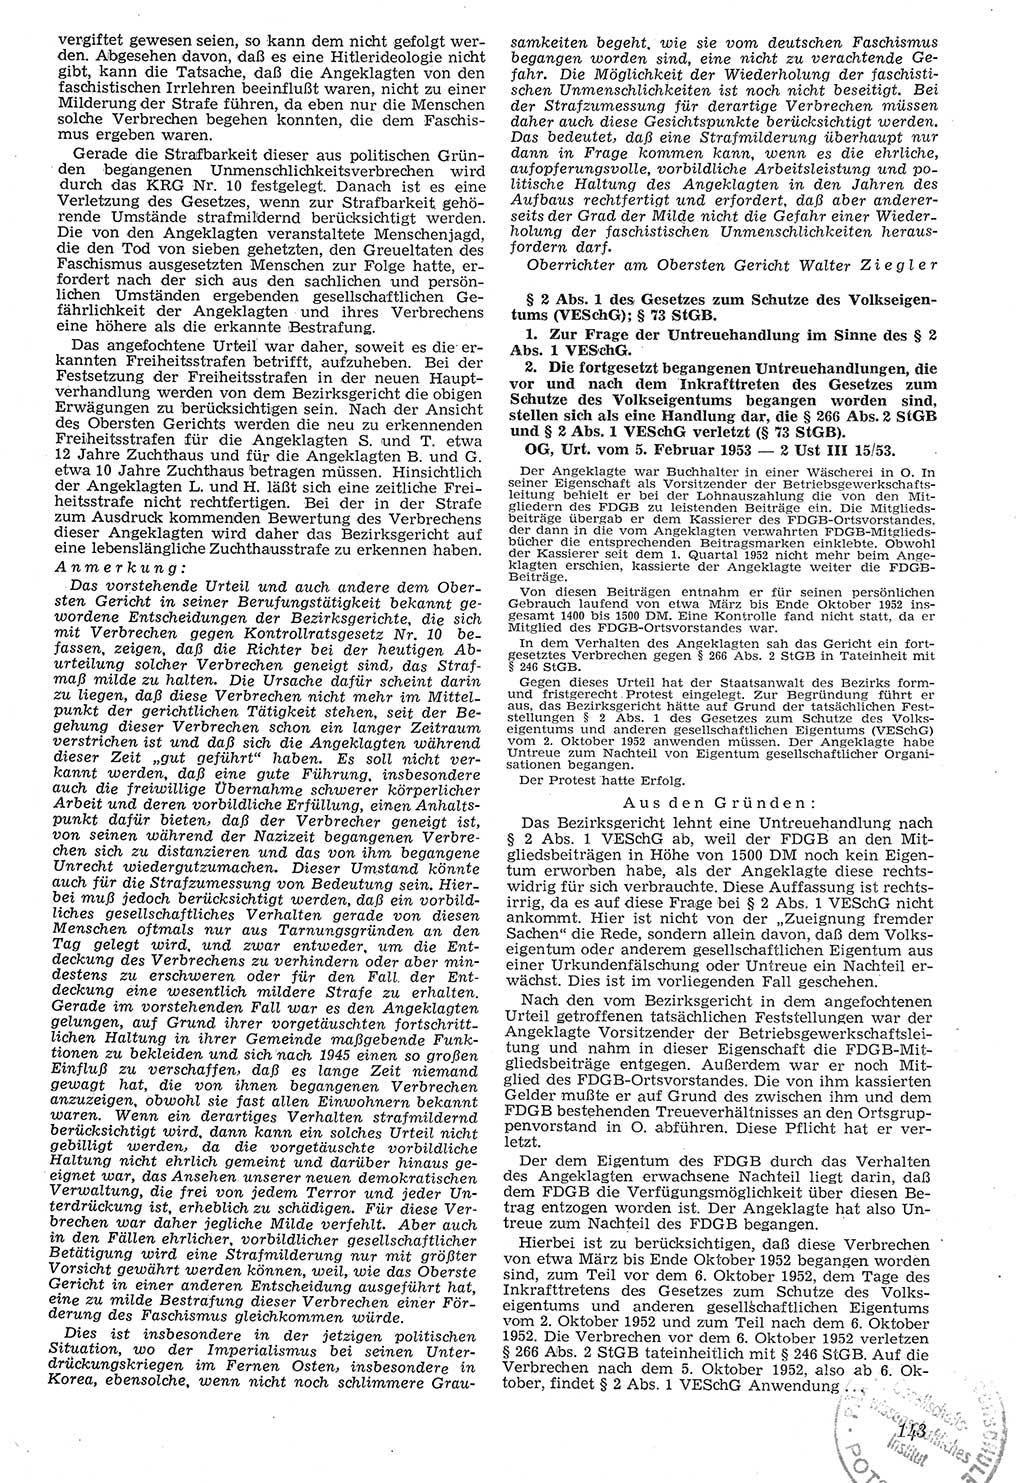 Neue Justiz (NJ), Zeitschrift für Recht und Rechtswissenschaft [Deutsche Demokratische Republik (DDR)], 7. Jahrgang 1953, Seite 143 (NJ DDR 1953, S. 143)